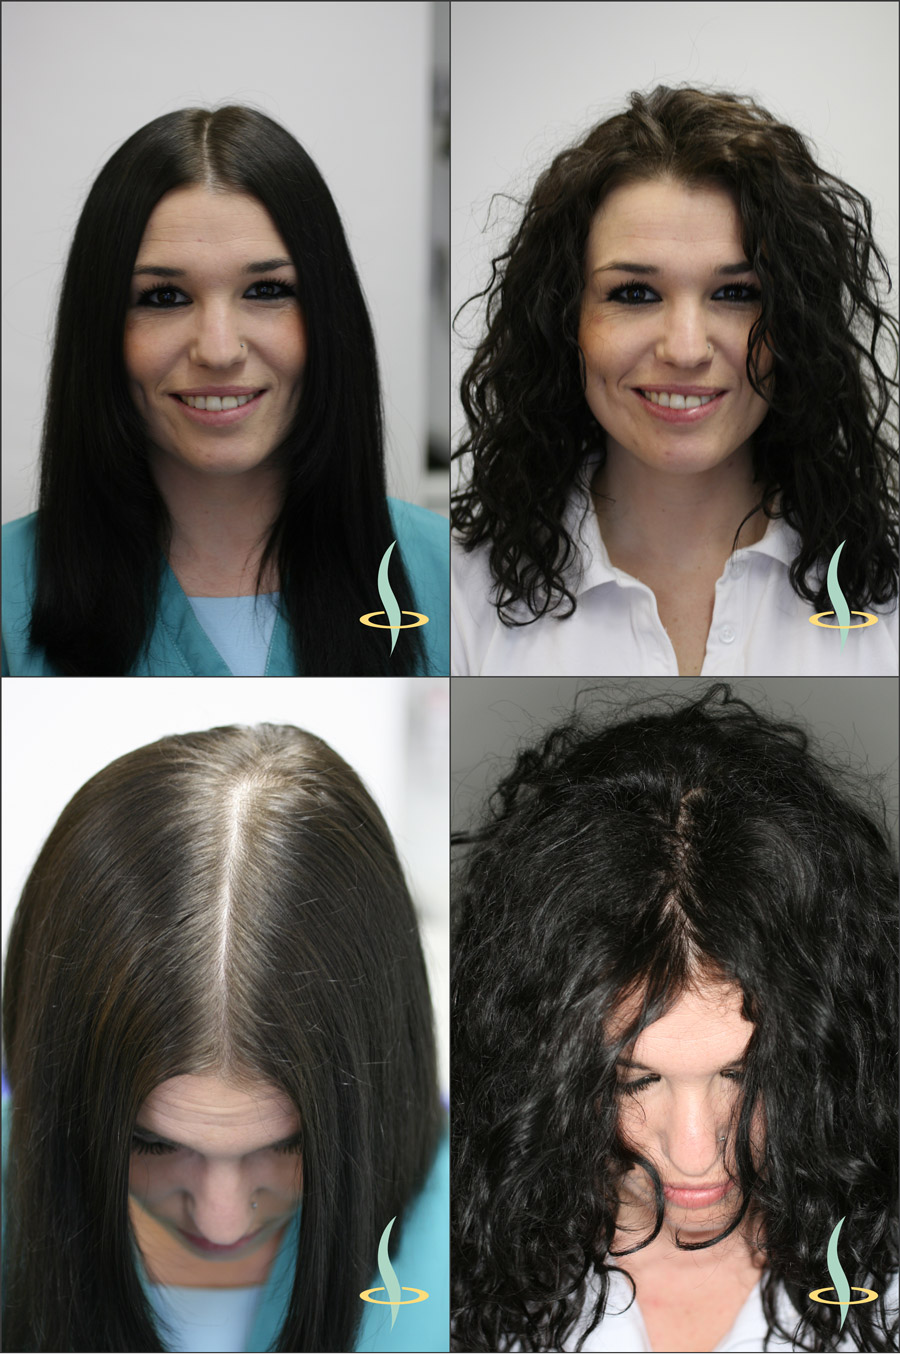 Illustration 2: Effet visuel des cheveux raides (à gauche) et bouclés (à droite) sur la visibilité du cuir chevelu. (Source: établi par l’auteur du document)